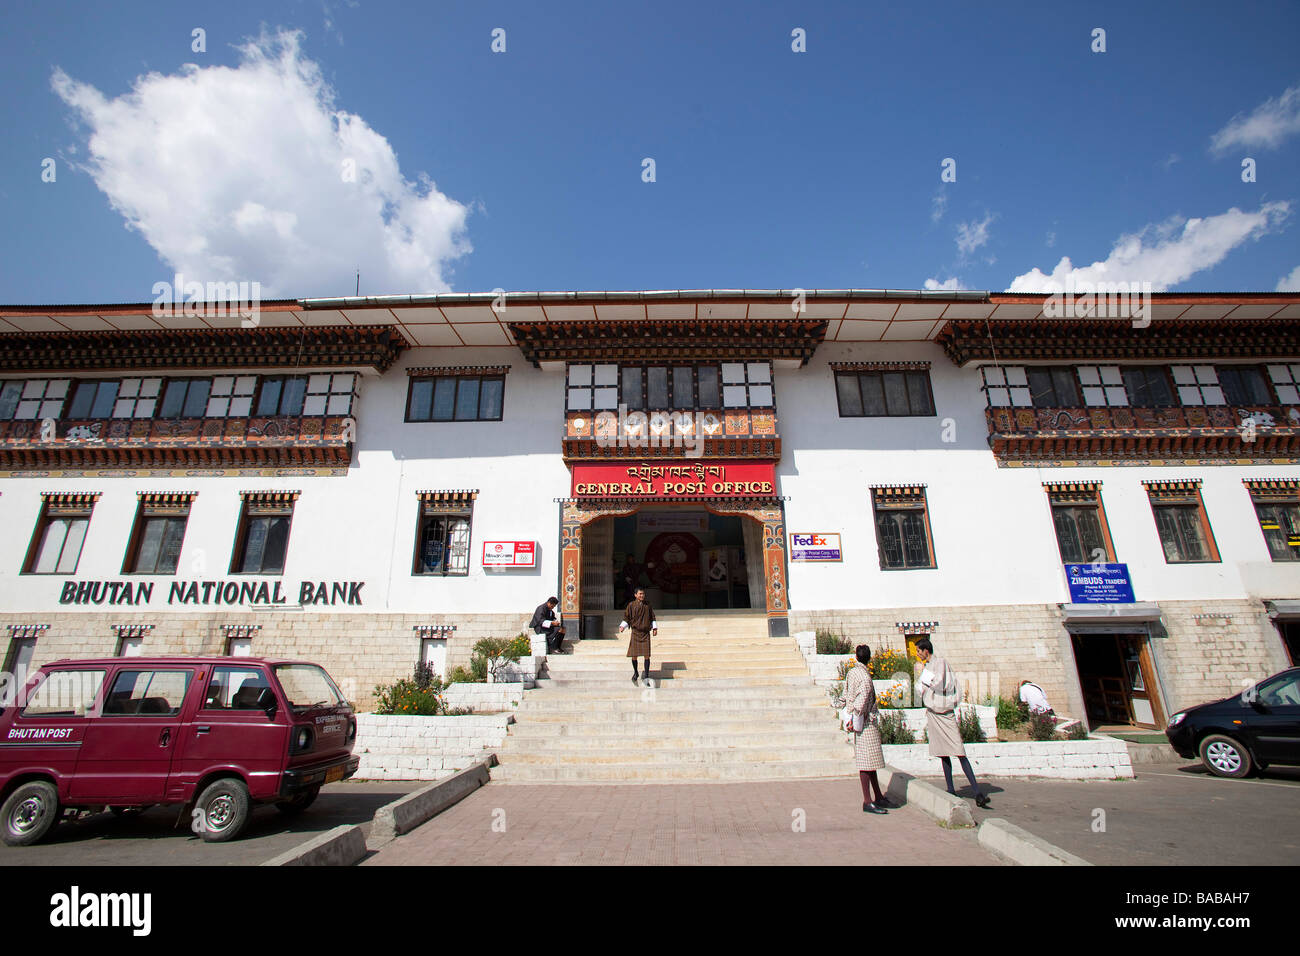 General post office et la banque à Thimphu, Bhoutan Asie 90997 Bhutan-Thimphu Banque D'Images